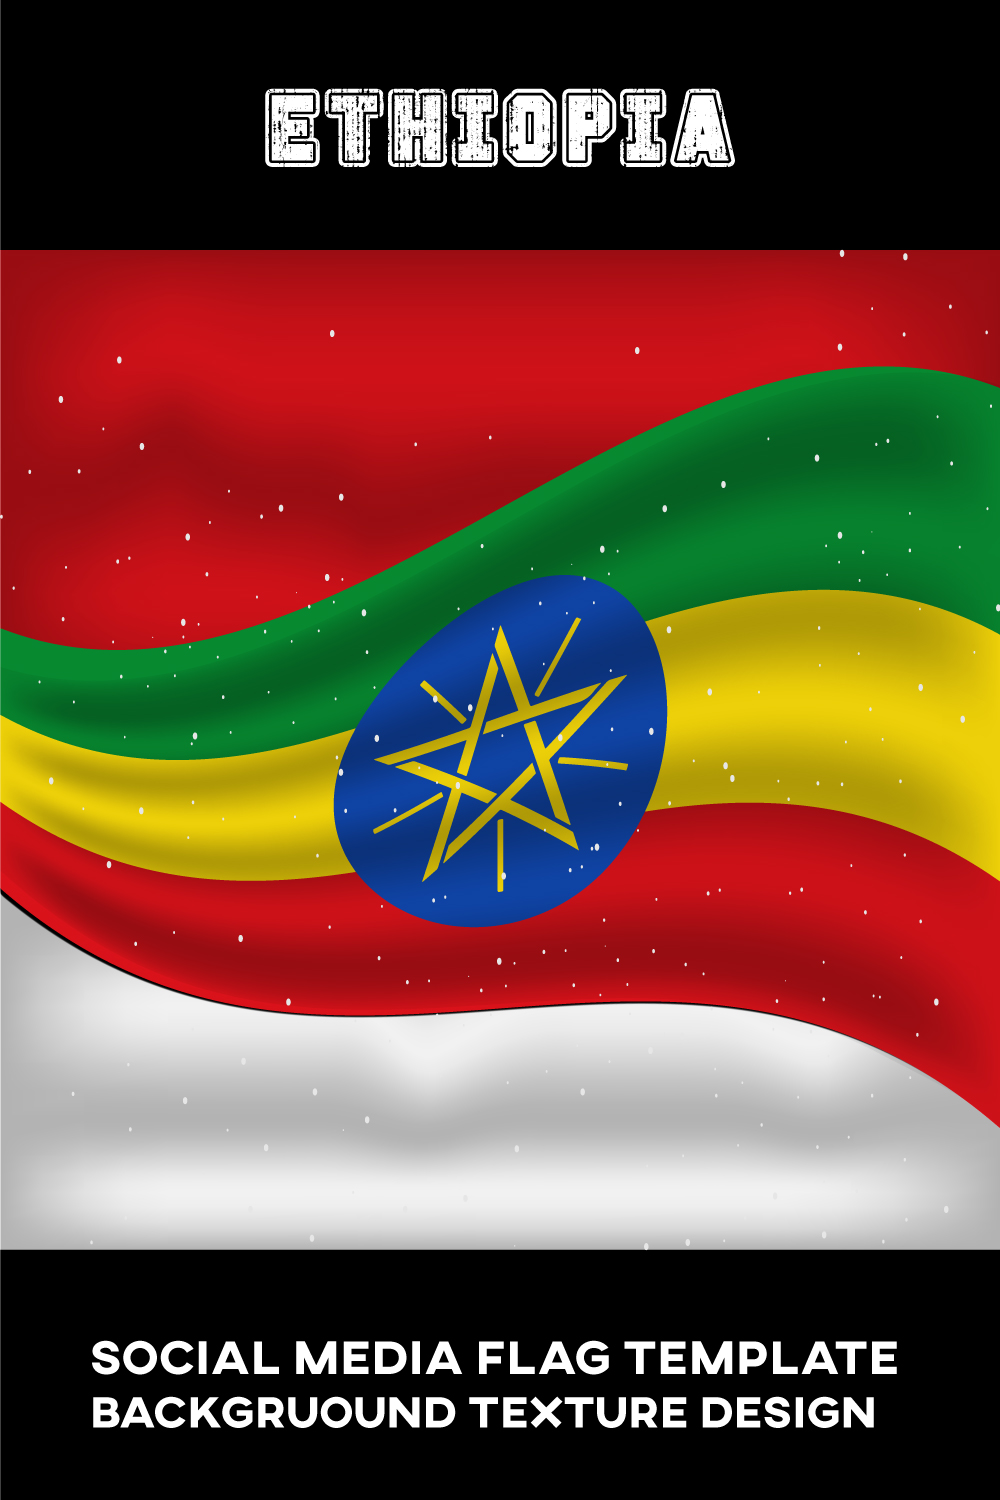 Wonderful image of the flag of Ethiopia.